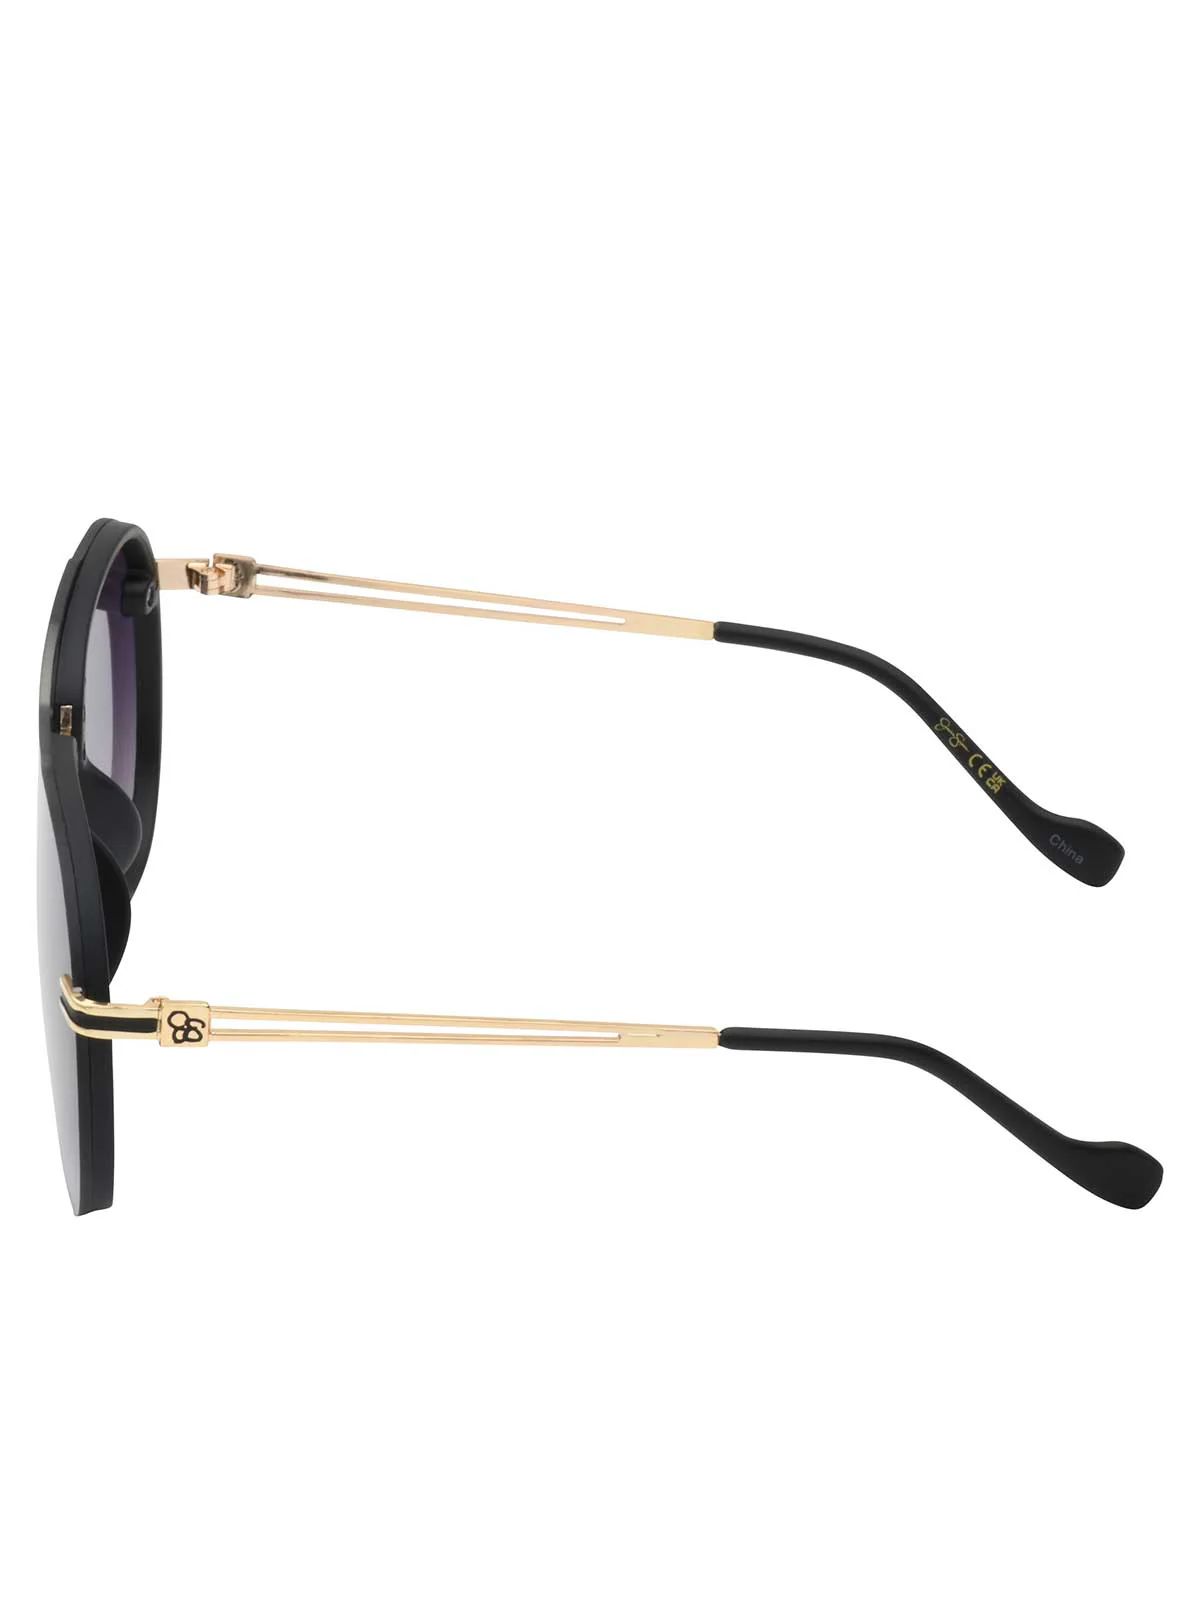 Metal Aviator Sunglasses in Smoke Matte Black | Jessica Simpson E Commerce